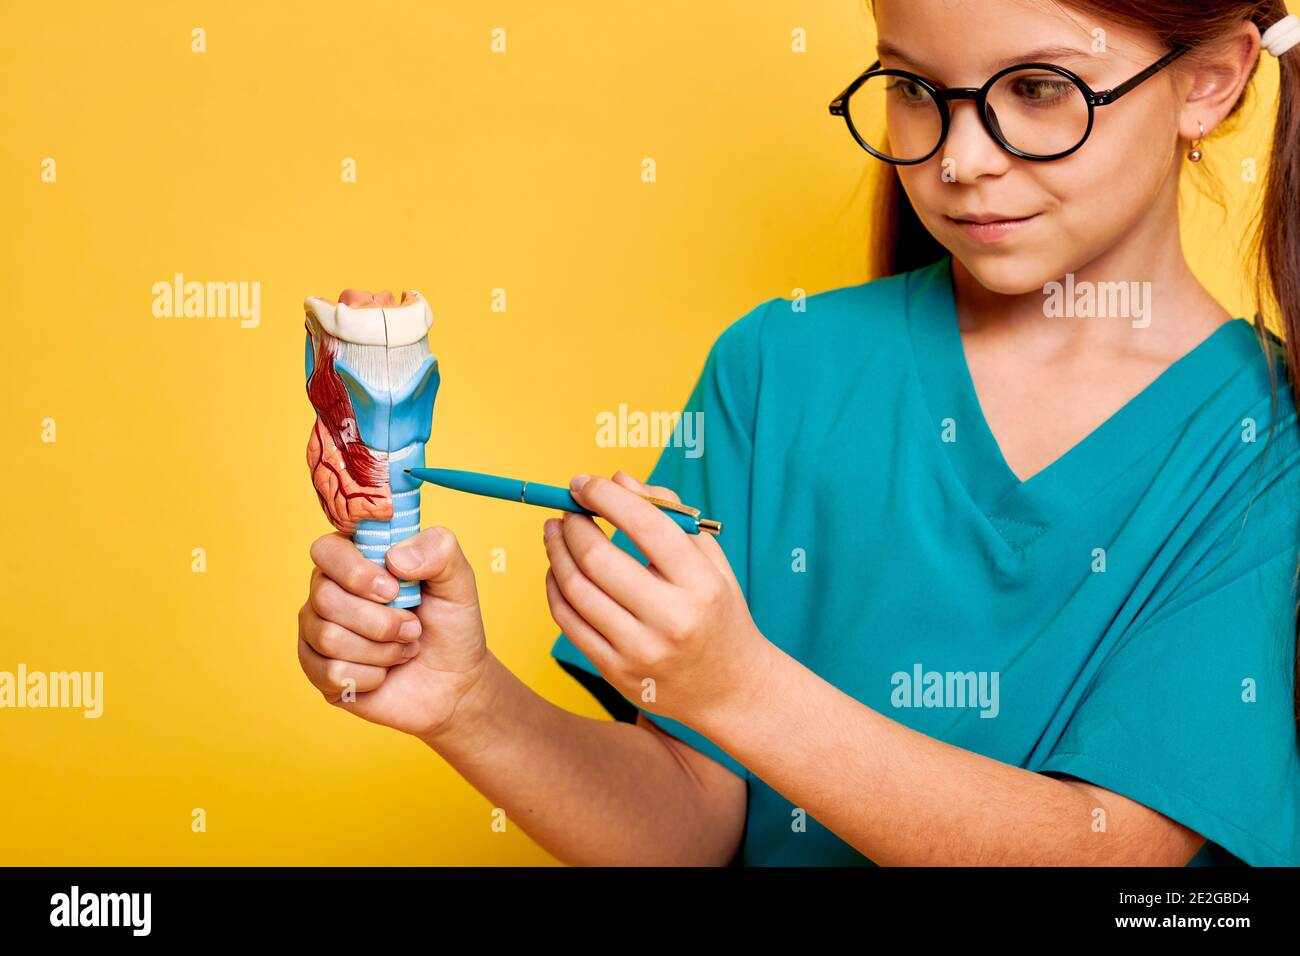 Adolescente portant un uniforme médical pointant un stylo dans un modèle anatomique de la glande thyroïde tout en étudiant l'anatomie humaine. Éducation scolaire, anatomie Banque D'Images